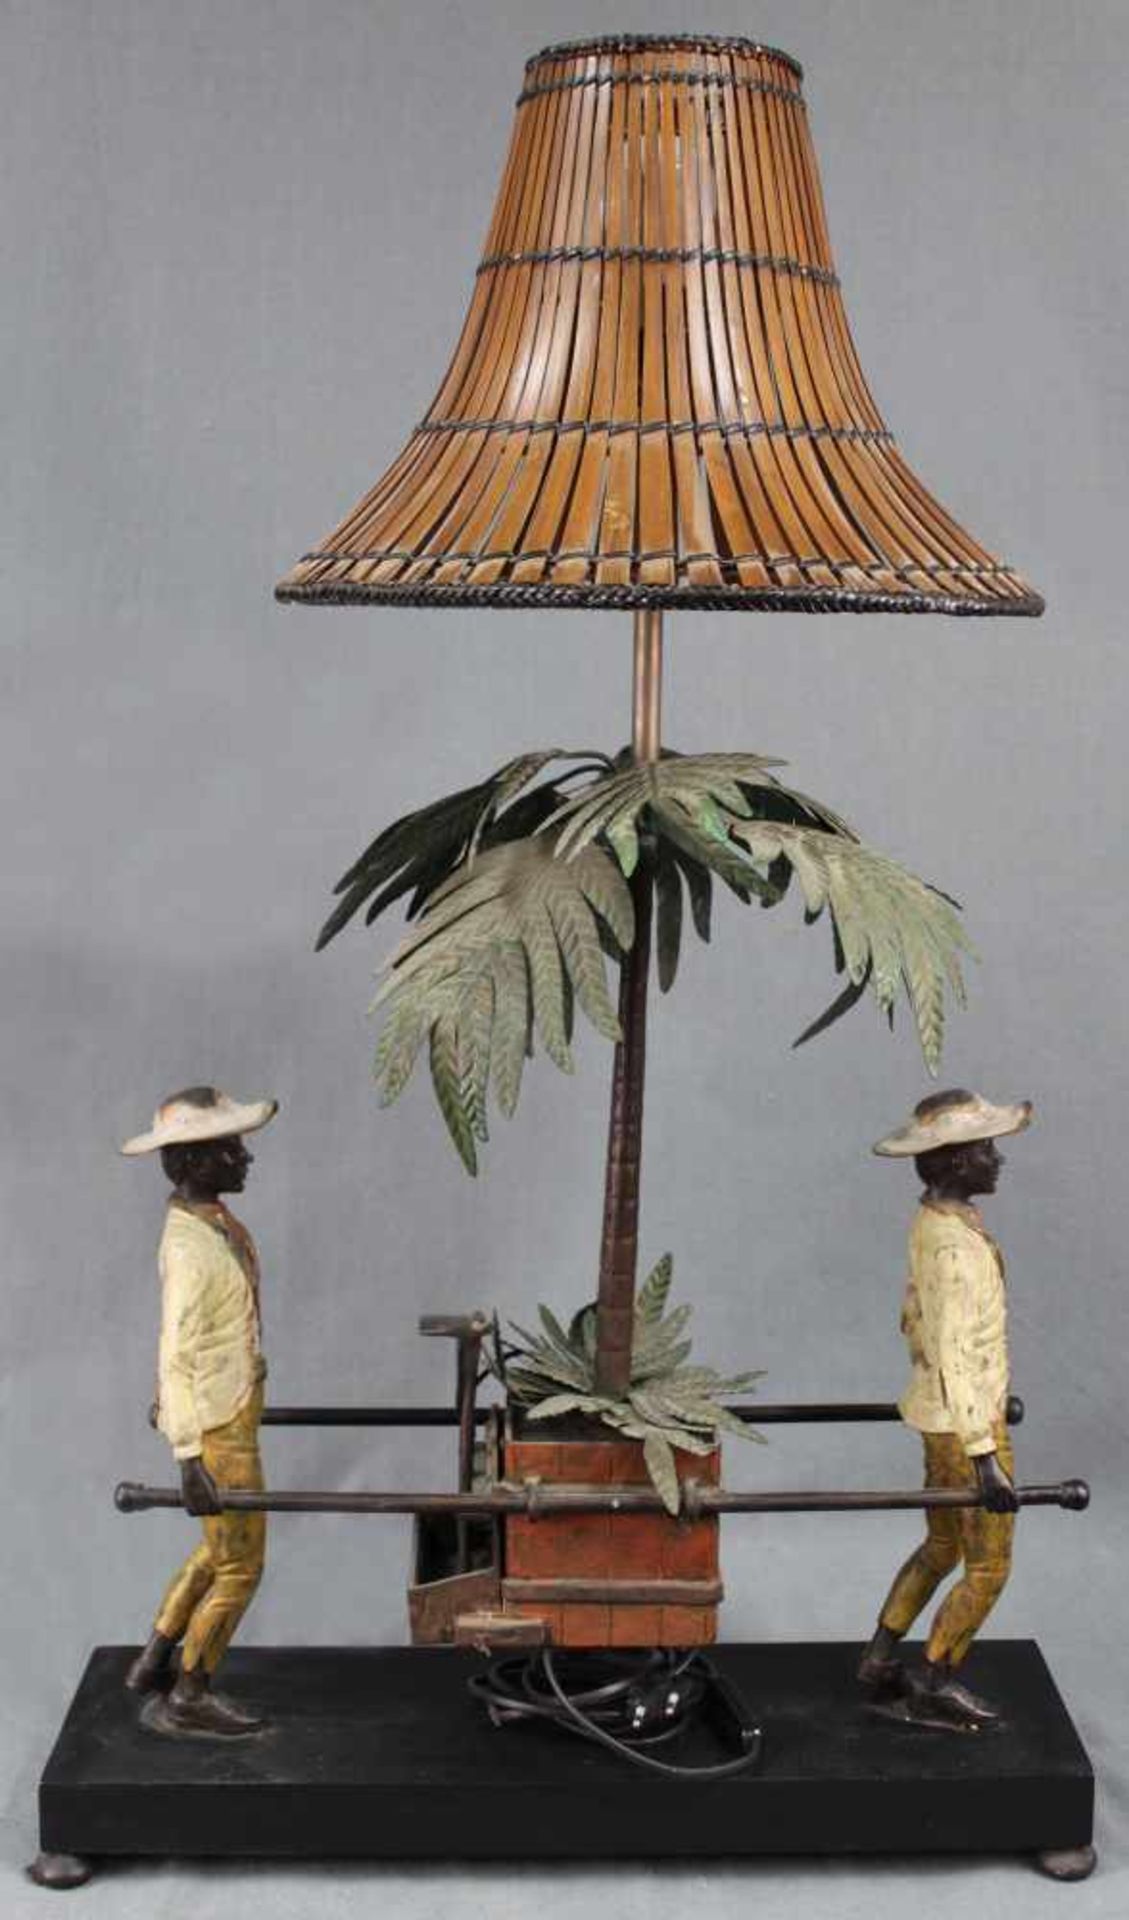 Lampe. Senfte, getragen von zwei Mohren. Mit Bambusschirm.90 cm x 52 cm. Elektrifiziert.Lampe. - Image 4 of 9